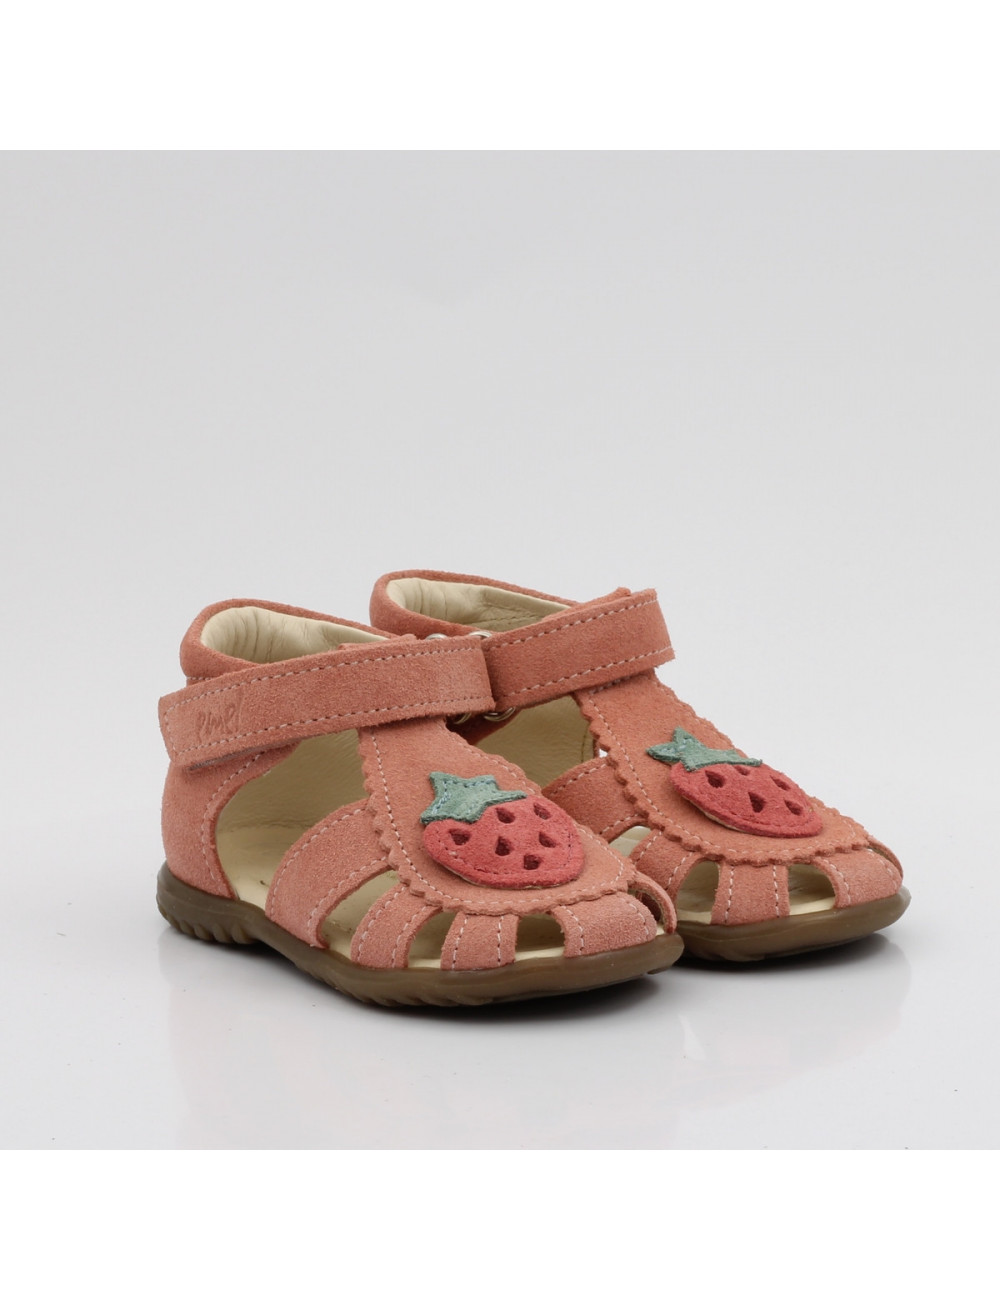 Emel horned children's sandals built-in ES 1214E-5